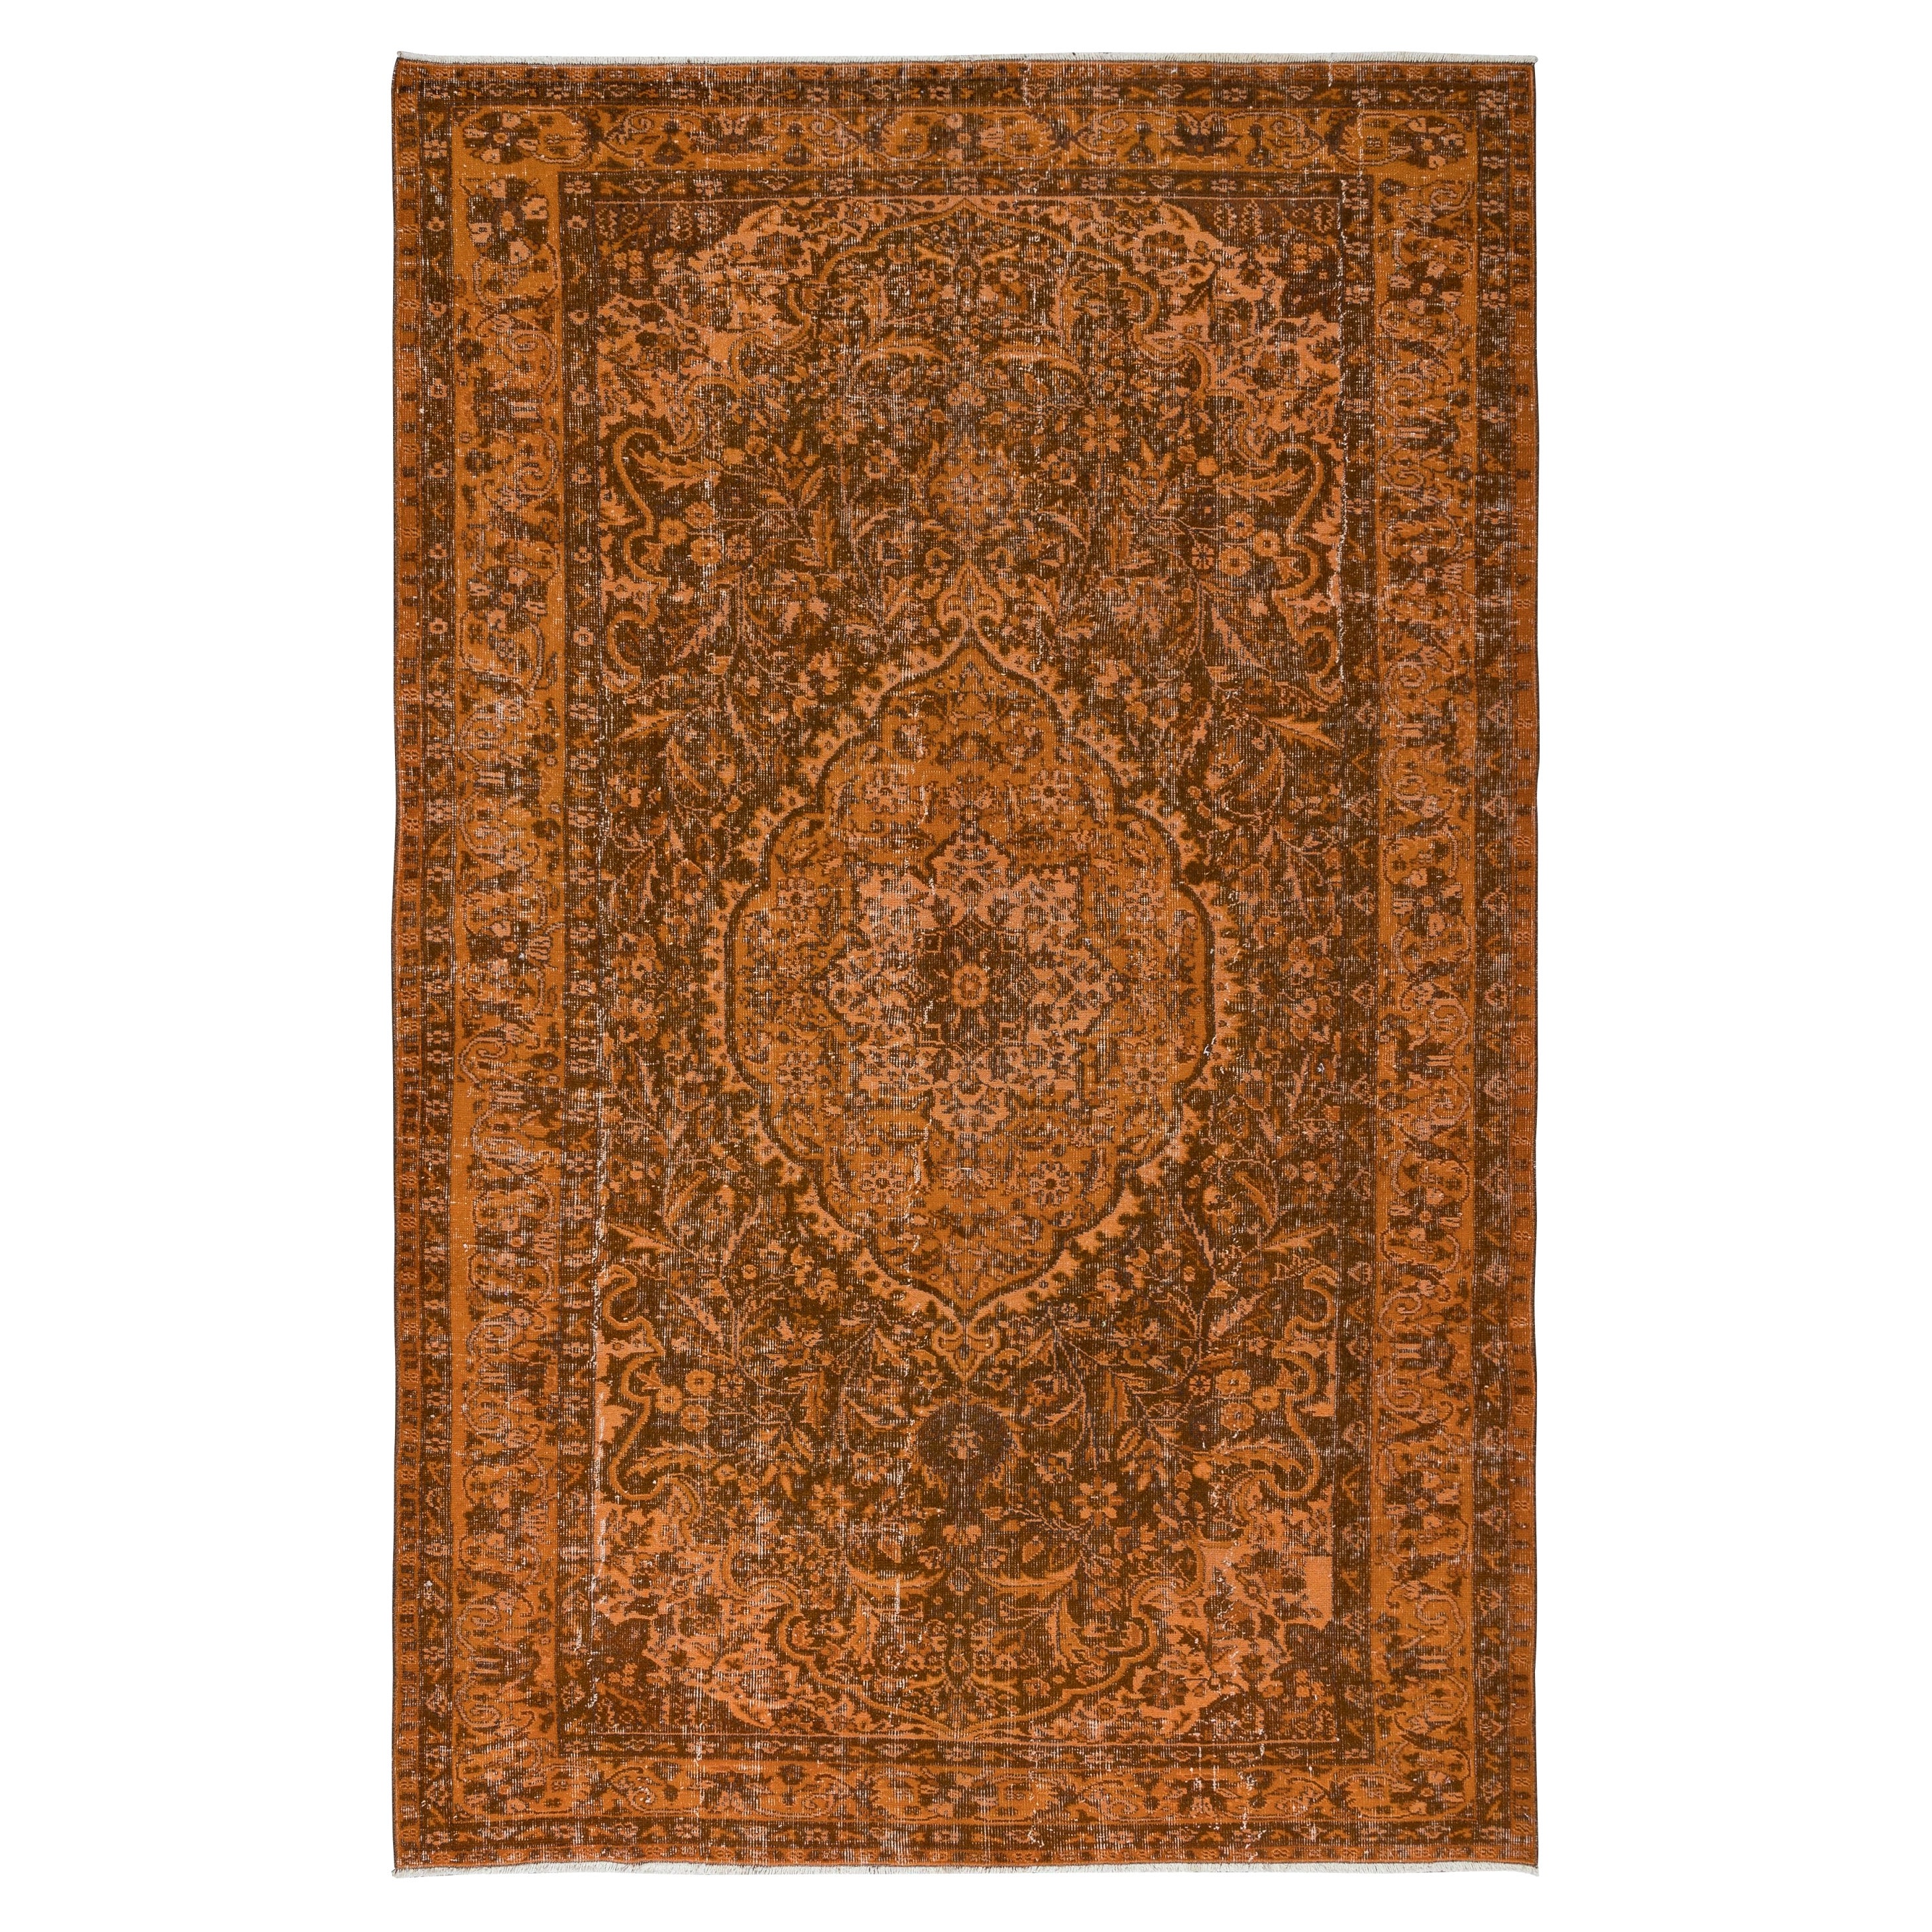 Handgefertigter türkischer Teppich in gebranntem Orange, 6.3x9.7 Ft, ideal für moderne Inneneinrichtung